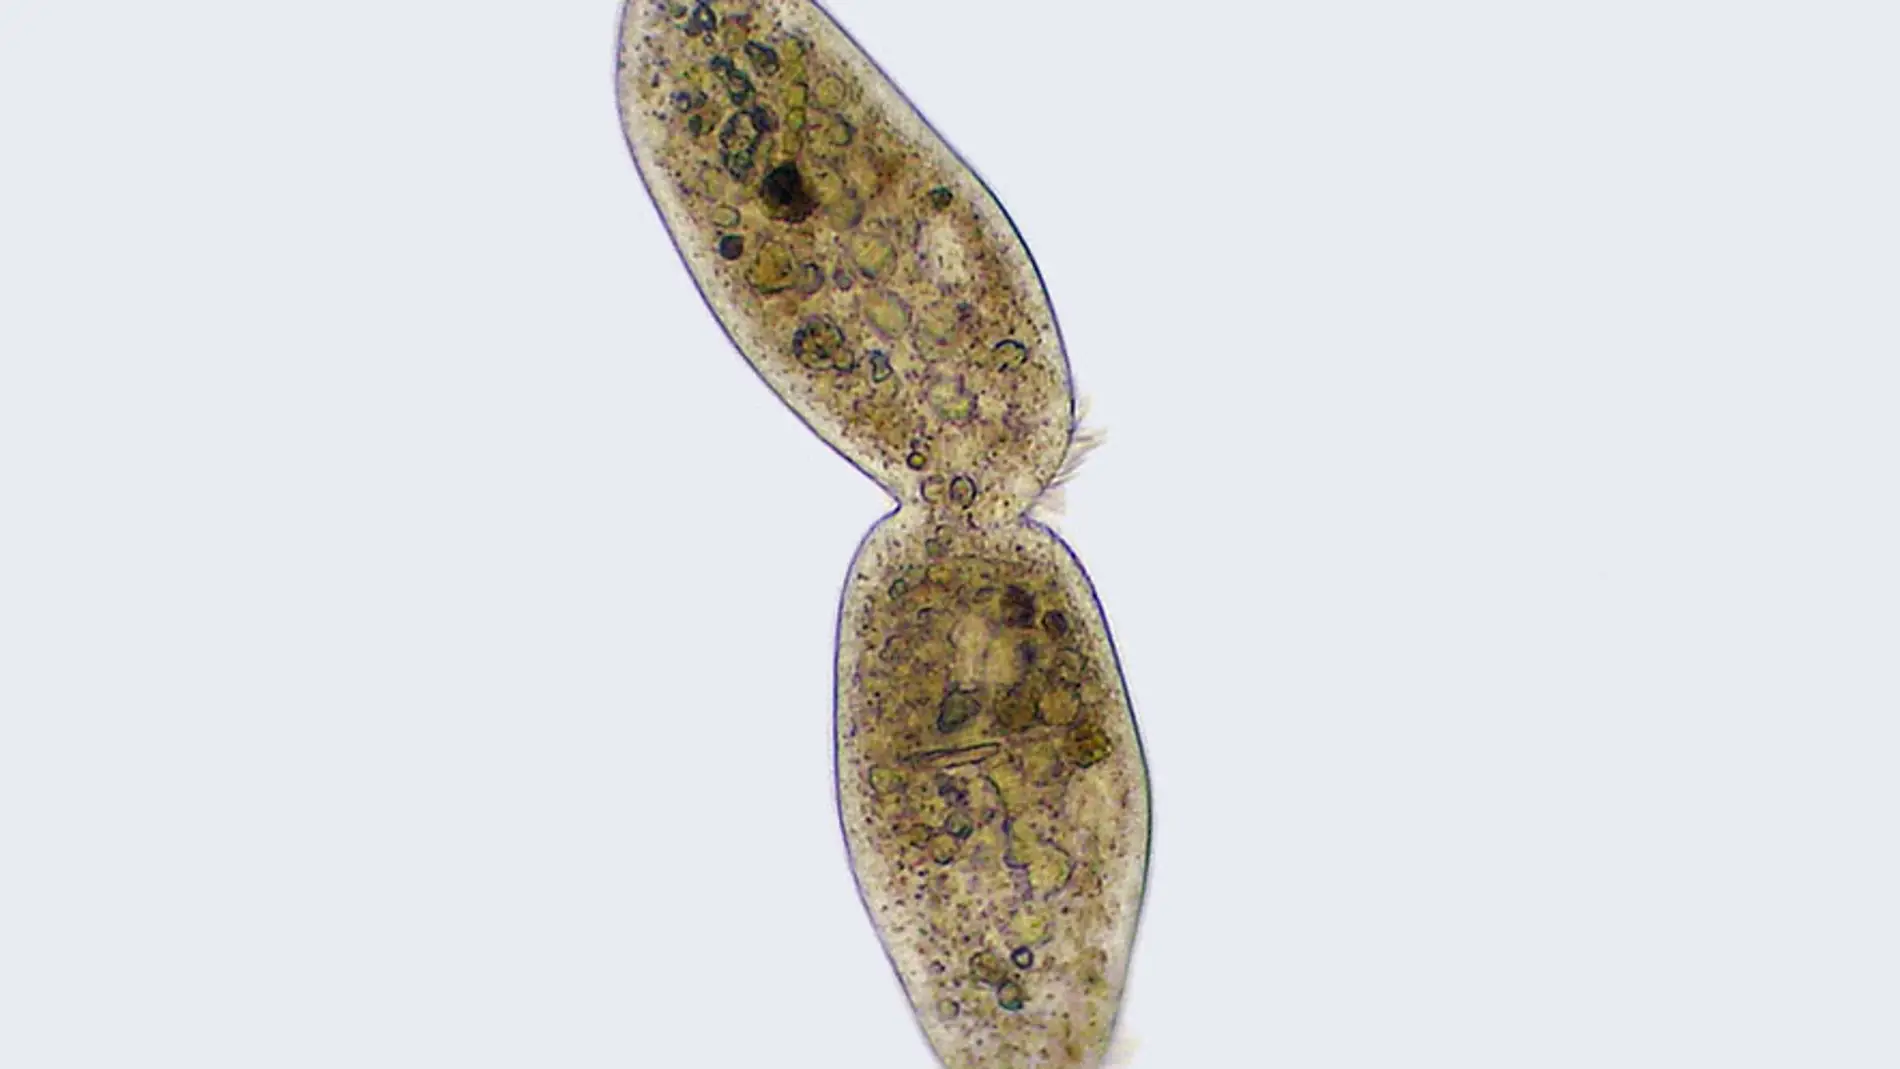 Imagen al microscopio de una ciliophora.